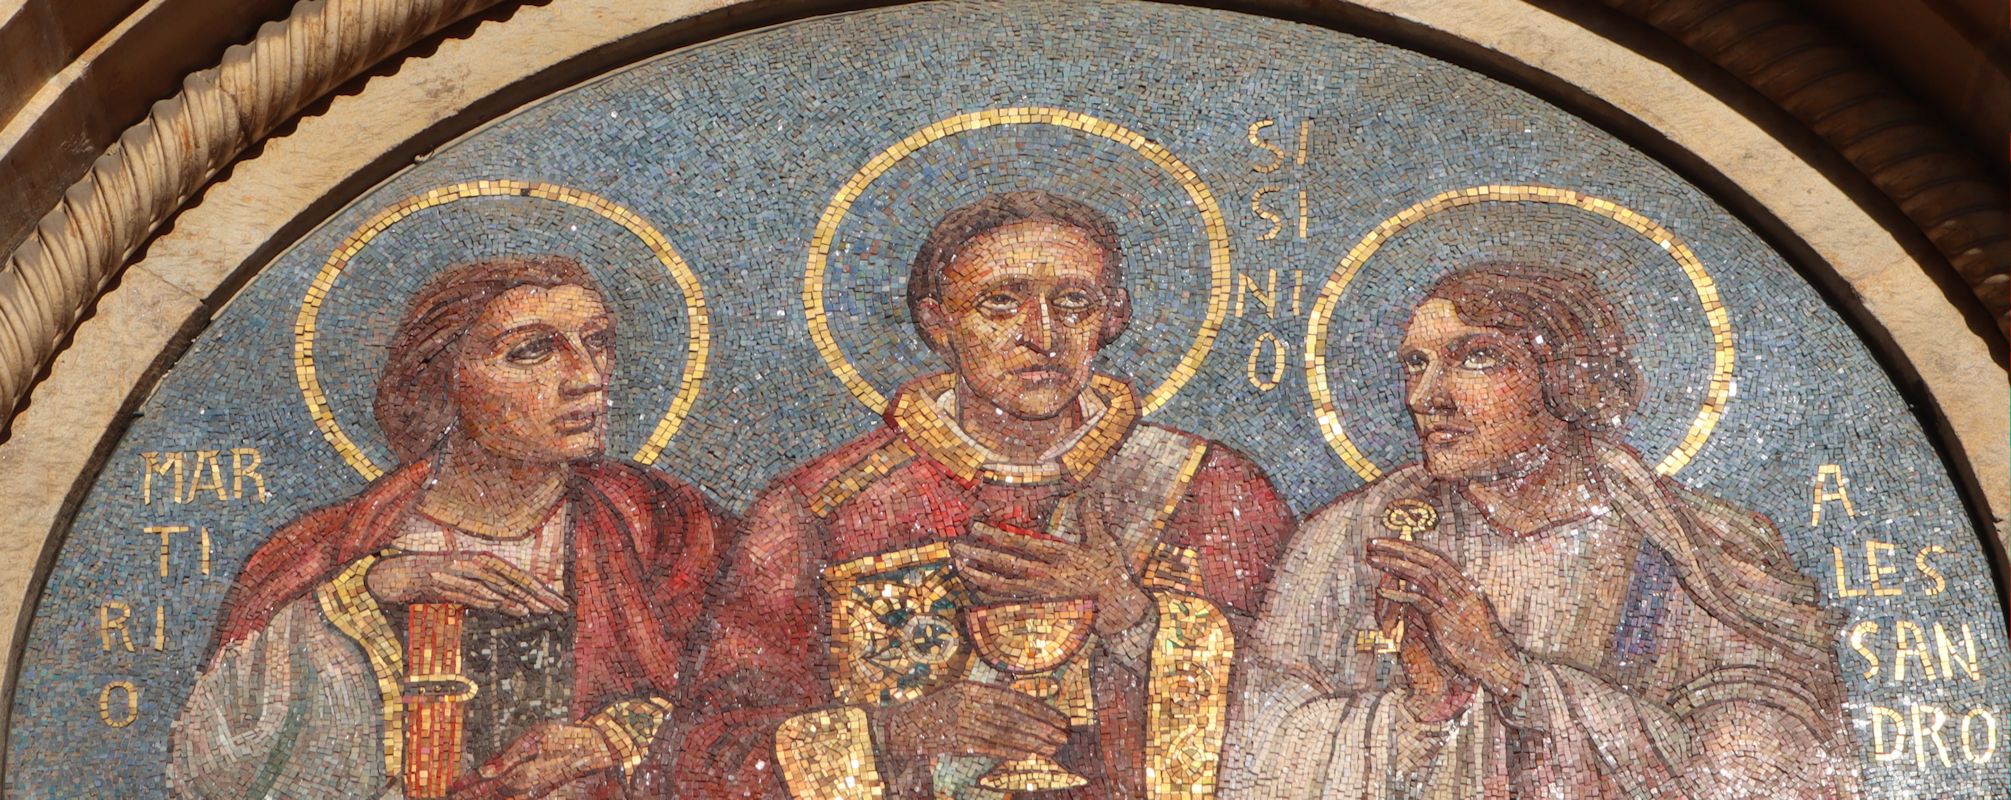 Martyrius, Sisinnius und Alexander, Relief am Portal der Basilika San Simpliciano in Mailand